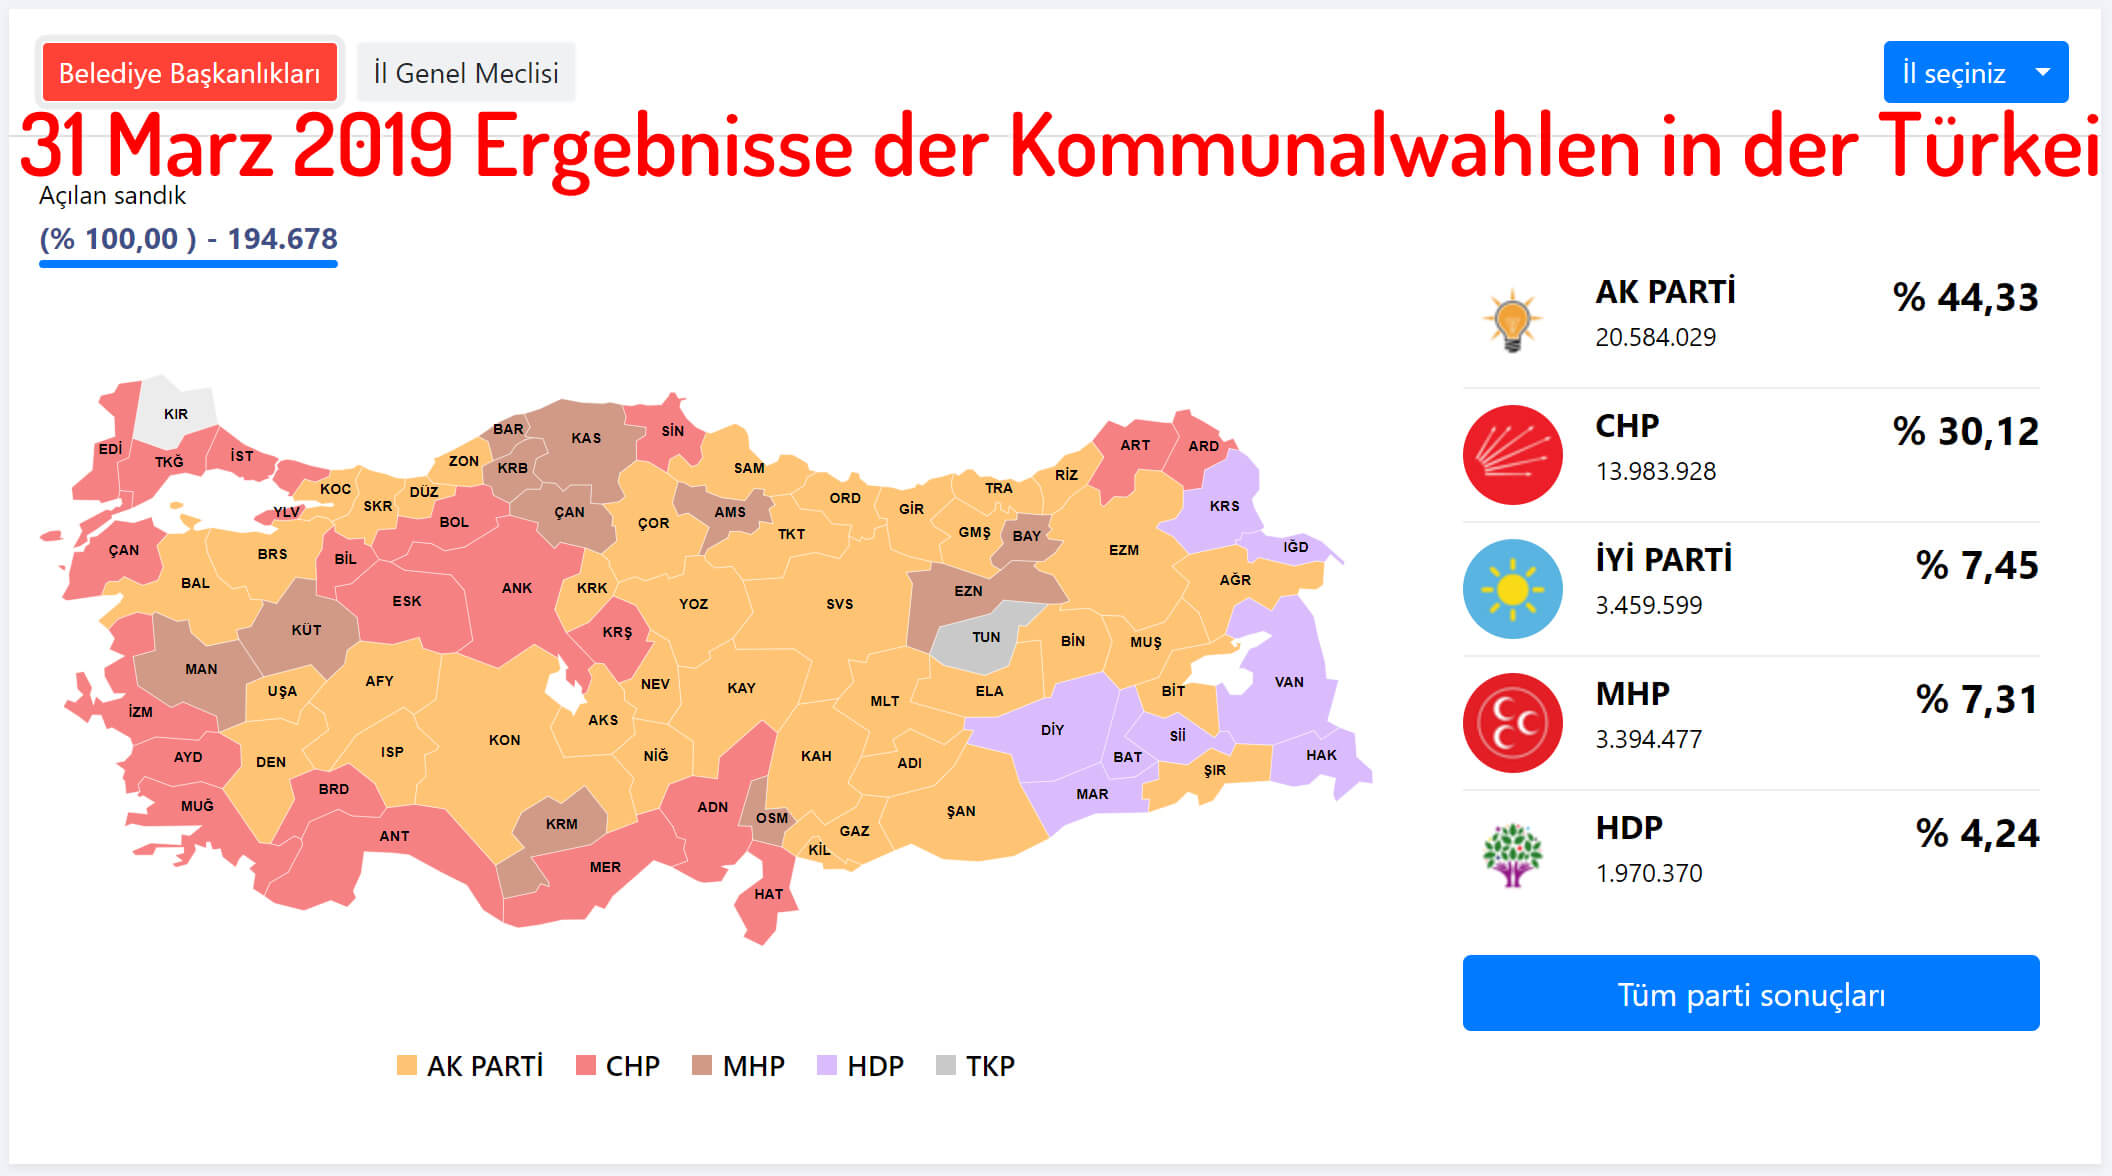 31 Marz 2019 Ergebnisse der Kommunalwahlen in der Türkei